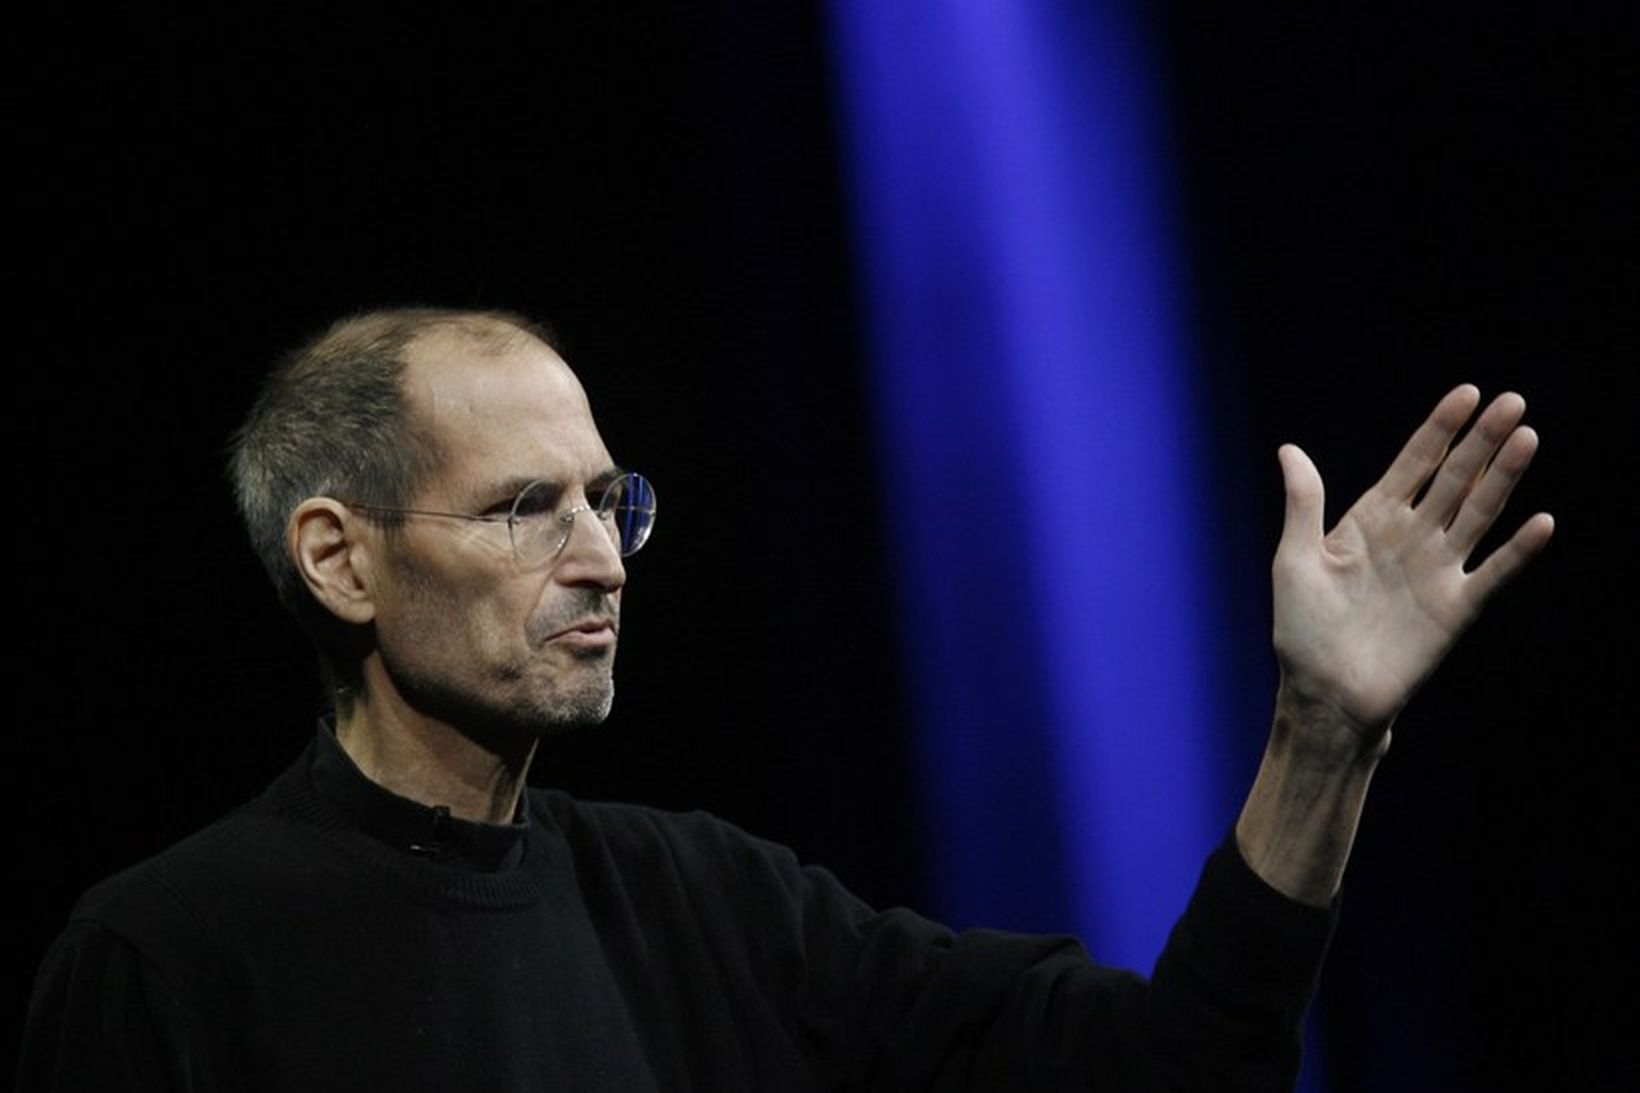 Steve Jobs lést árið 2011 eftir baráttu við krabbamein.